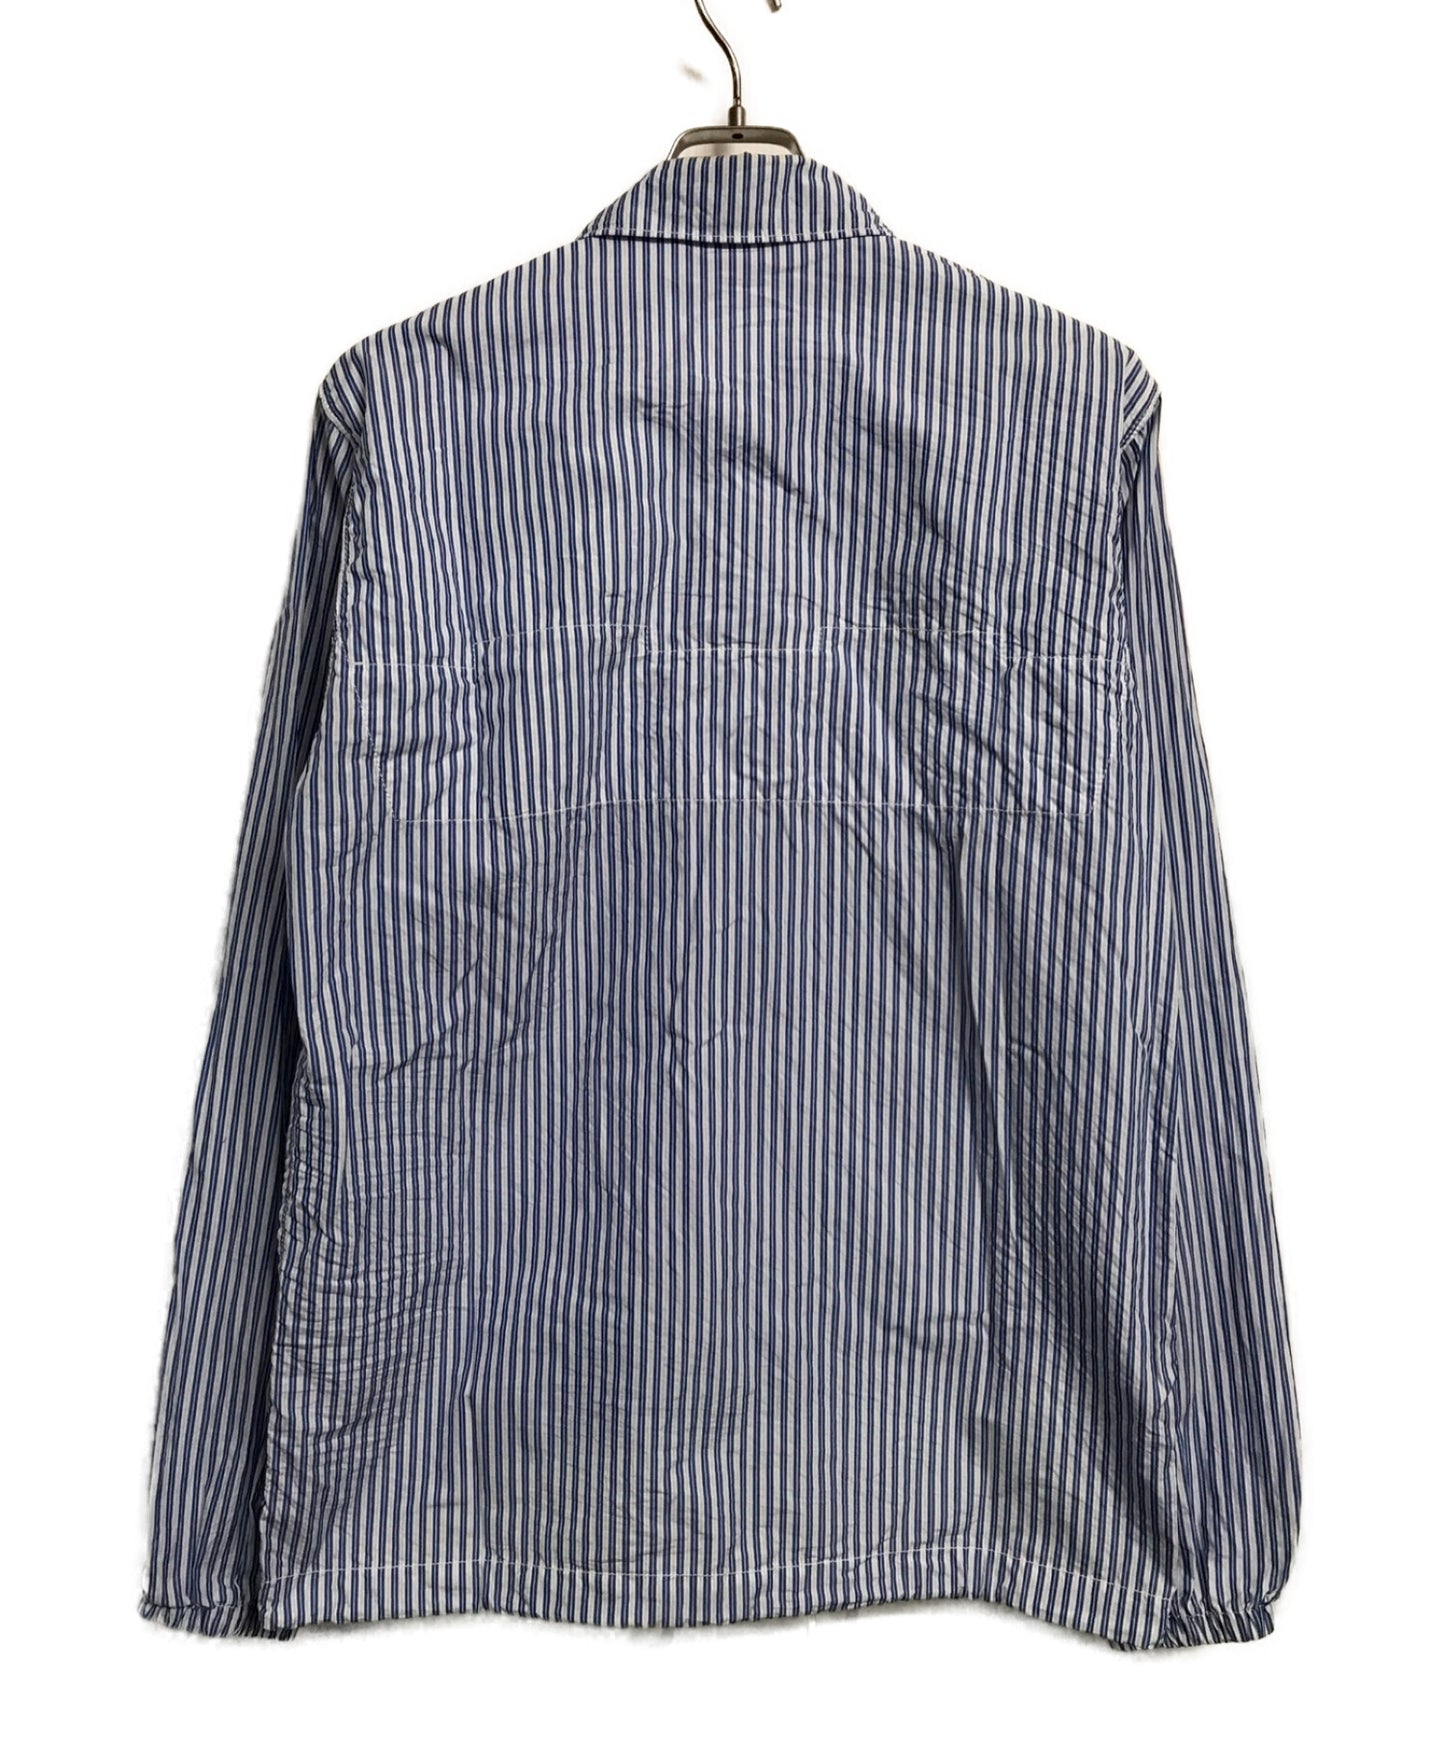 Comme des Garcons 셔츠 줄무늬 코치 재킷 S27165